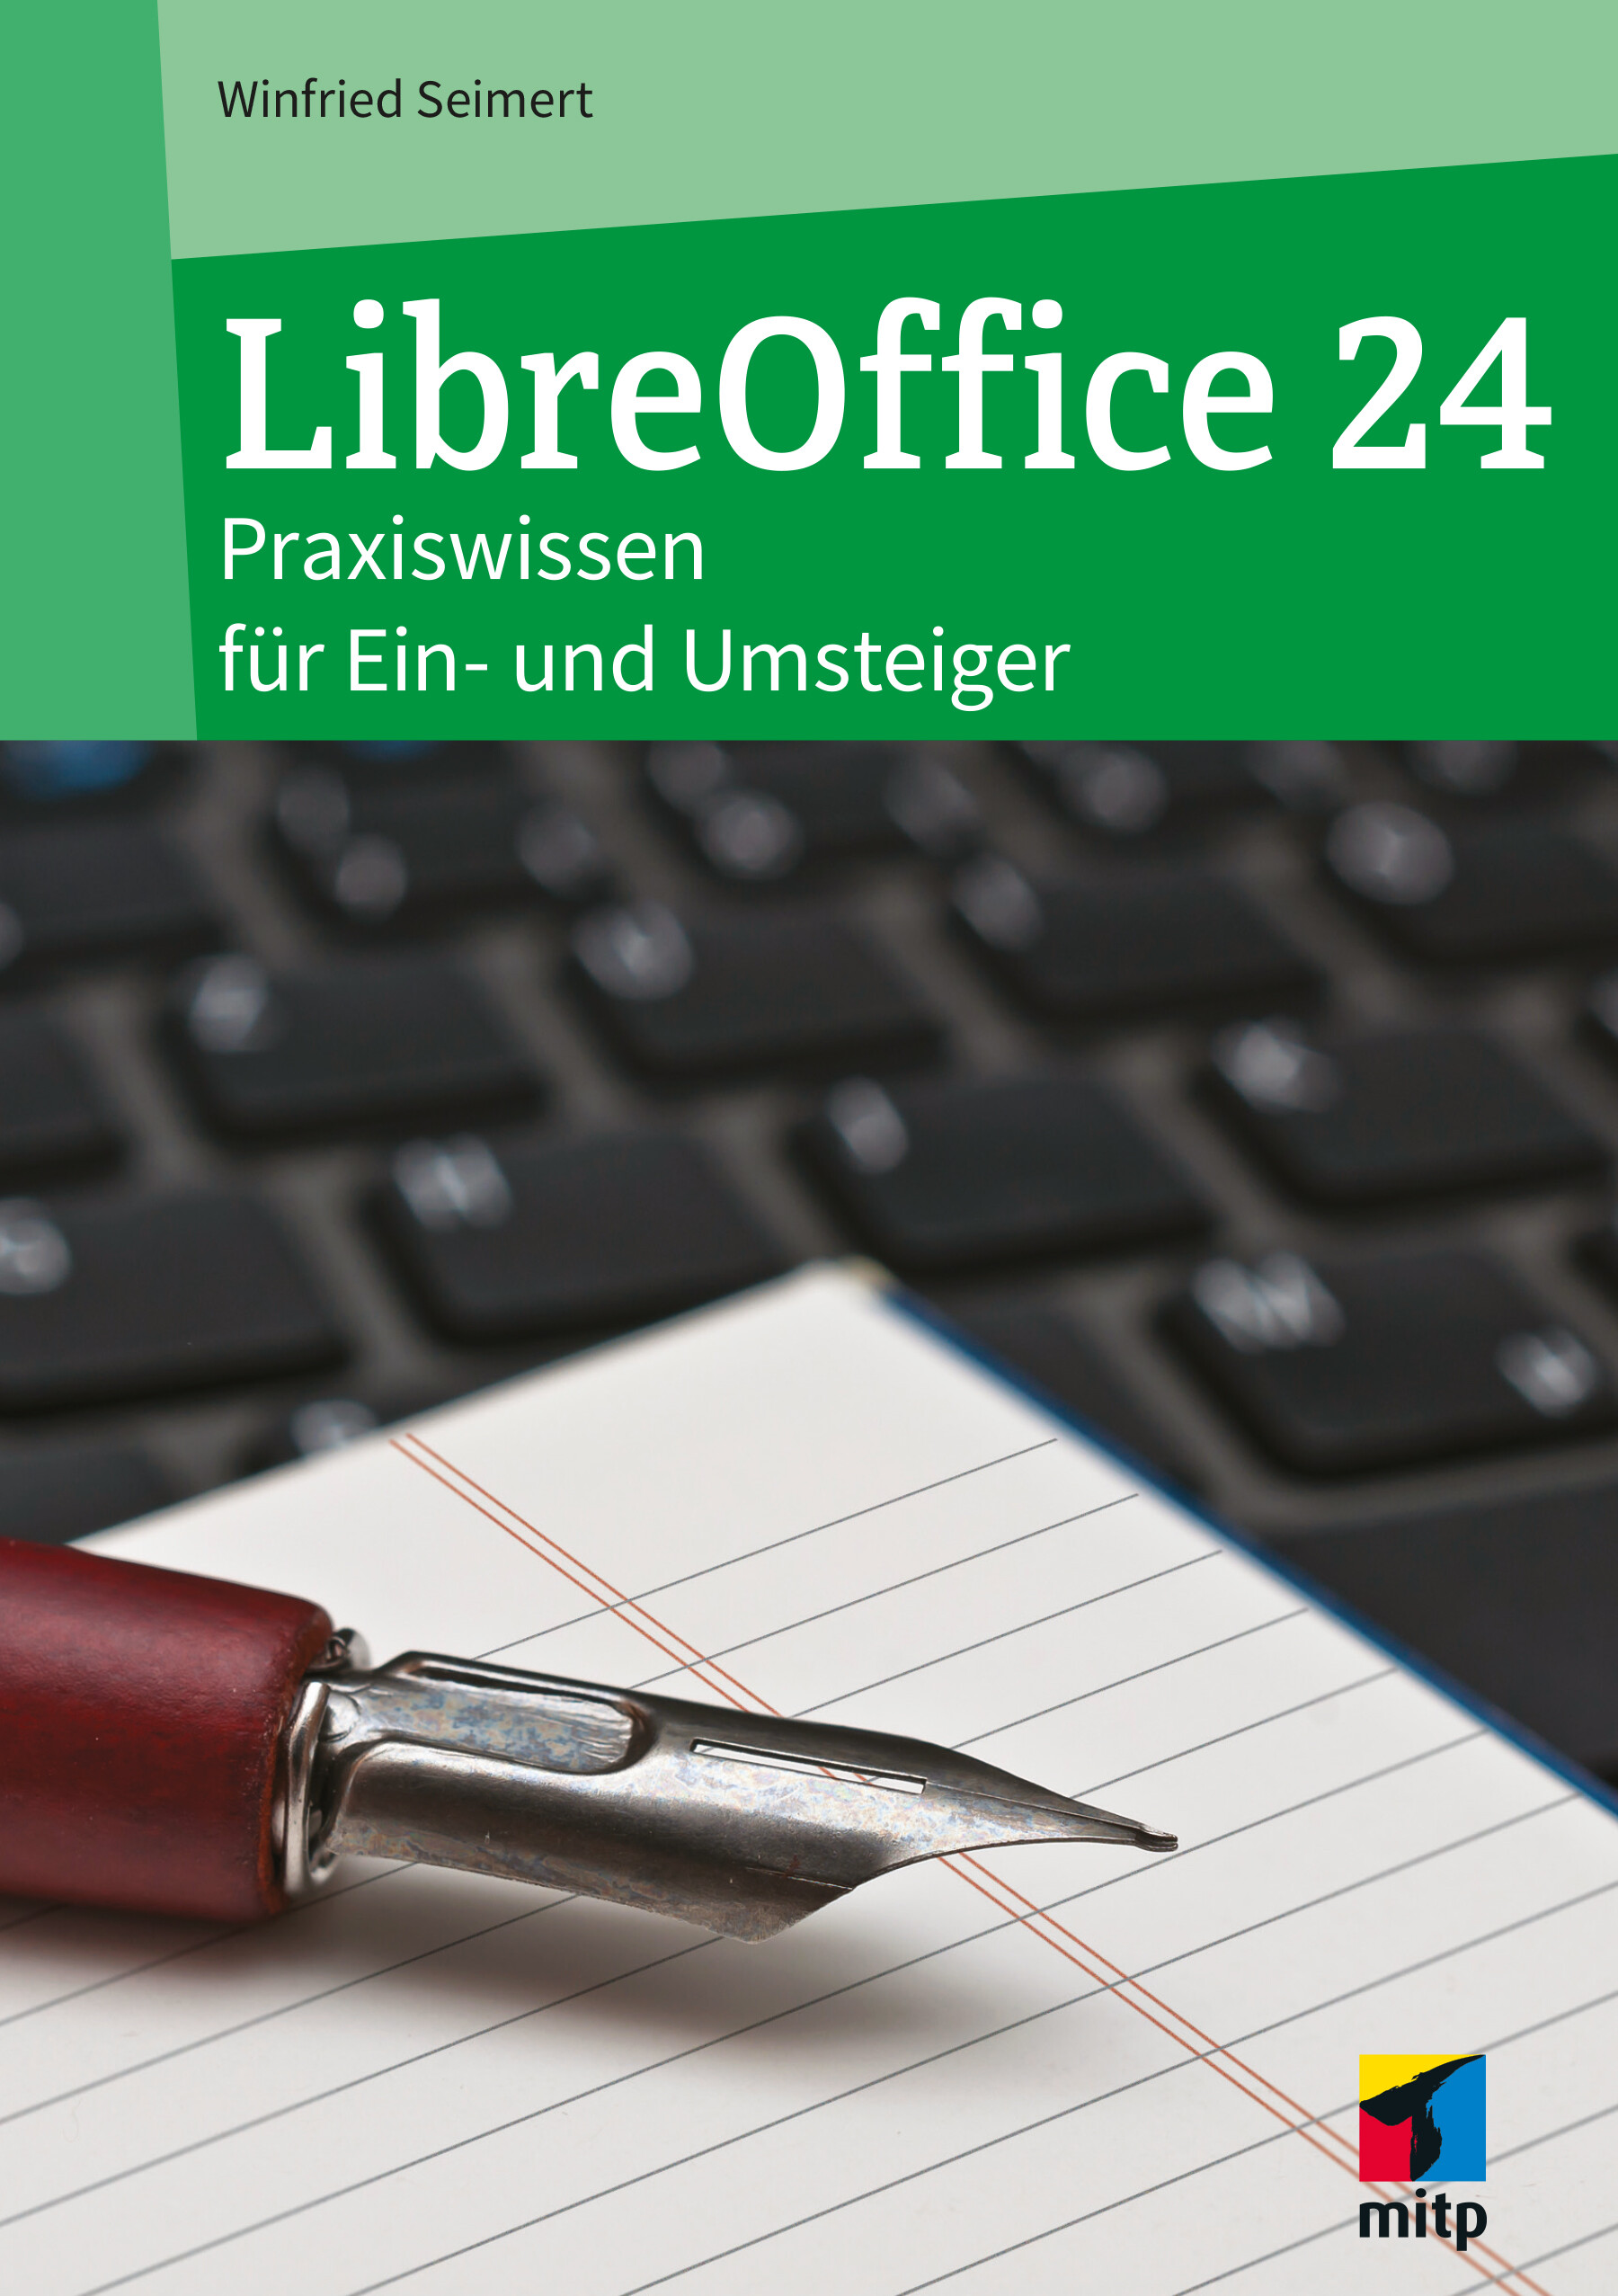 LibreOffice 24 - Praxiswissen für Ein- und Umsteiger